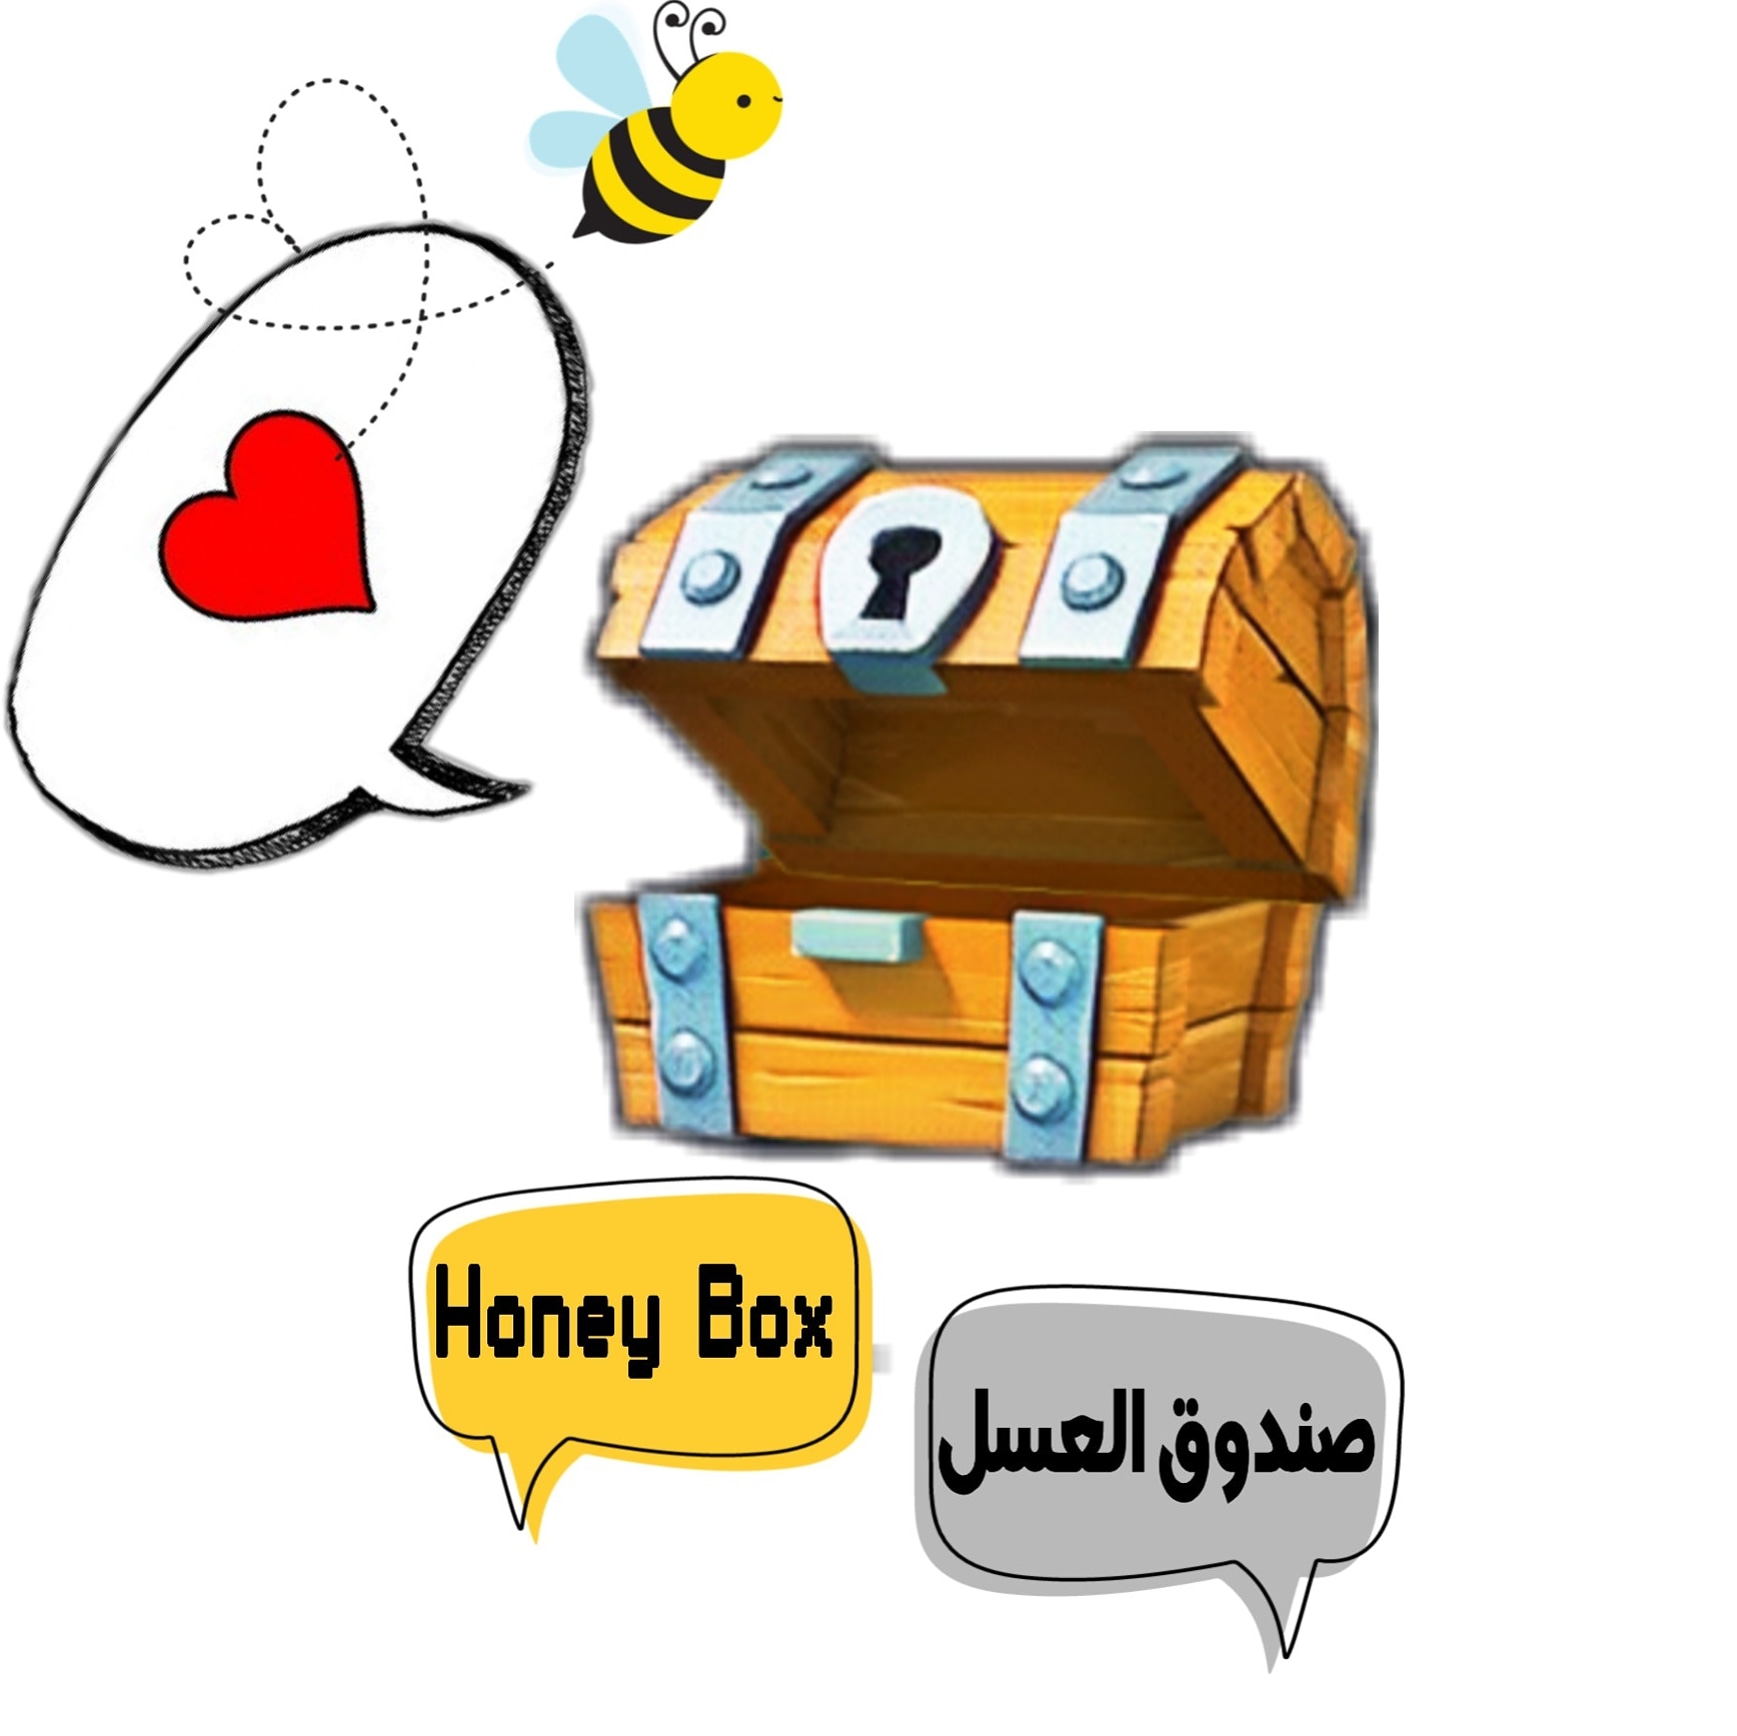 Honey Box